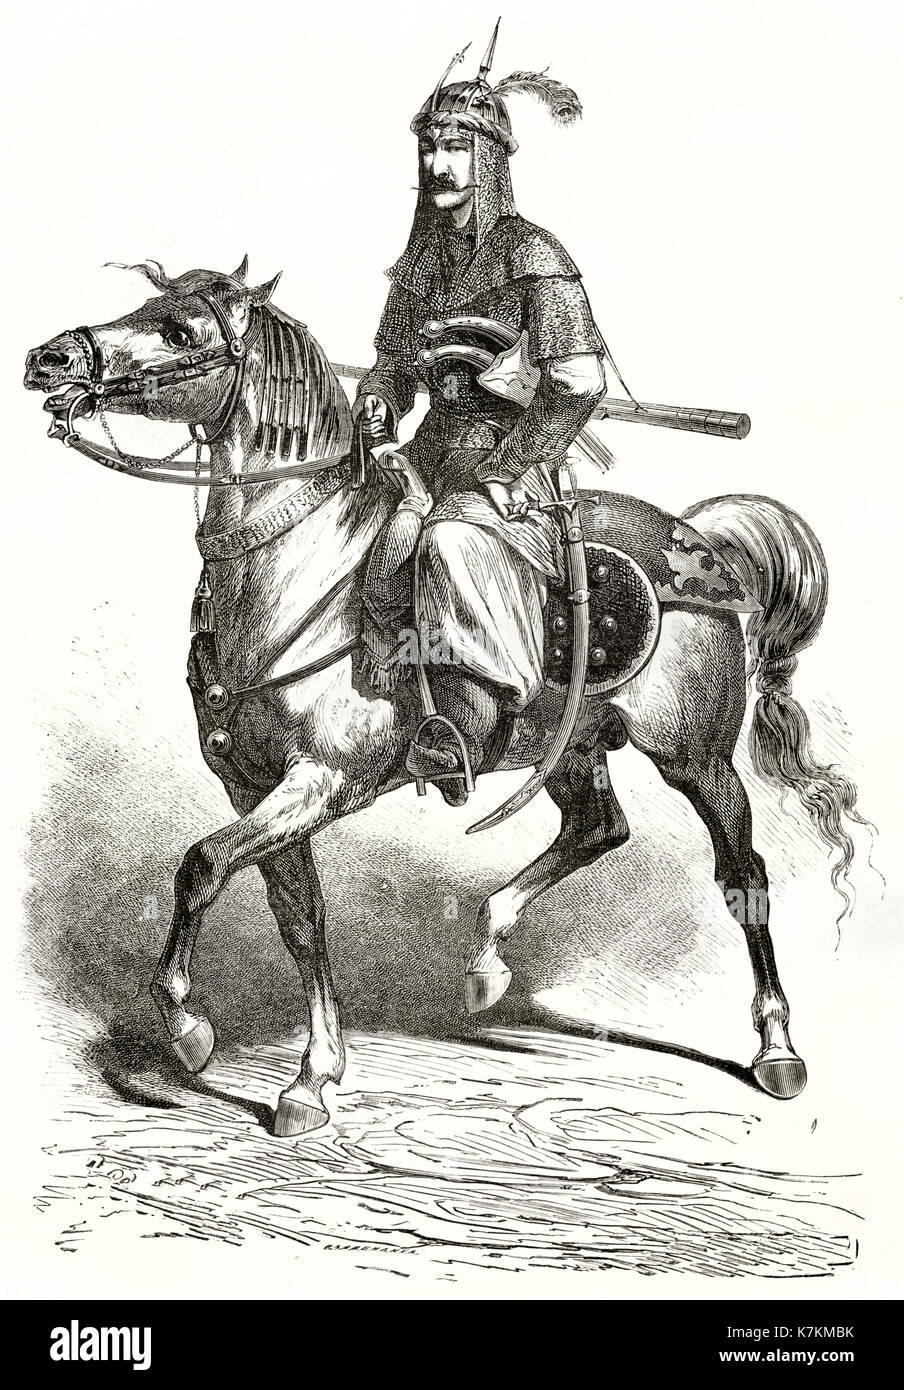 Vieille illustration d'un chevalier kurde. Par Duhousset, publ. sur le Tour du Monde, Paris, 1862 Banque D'Images